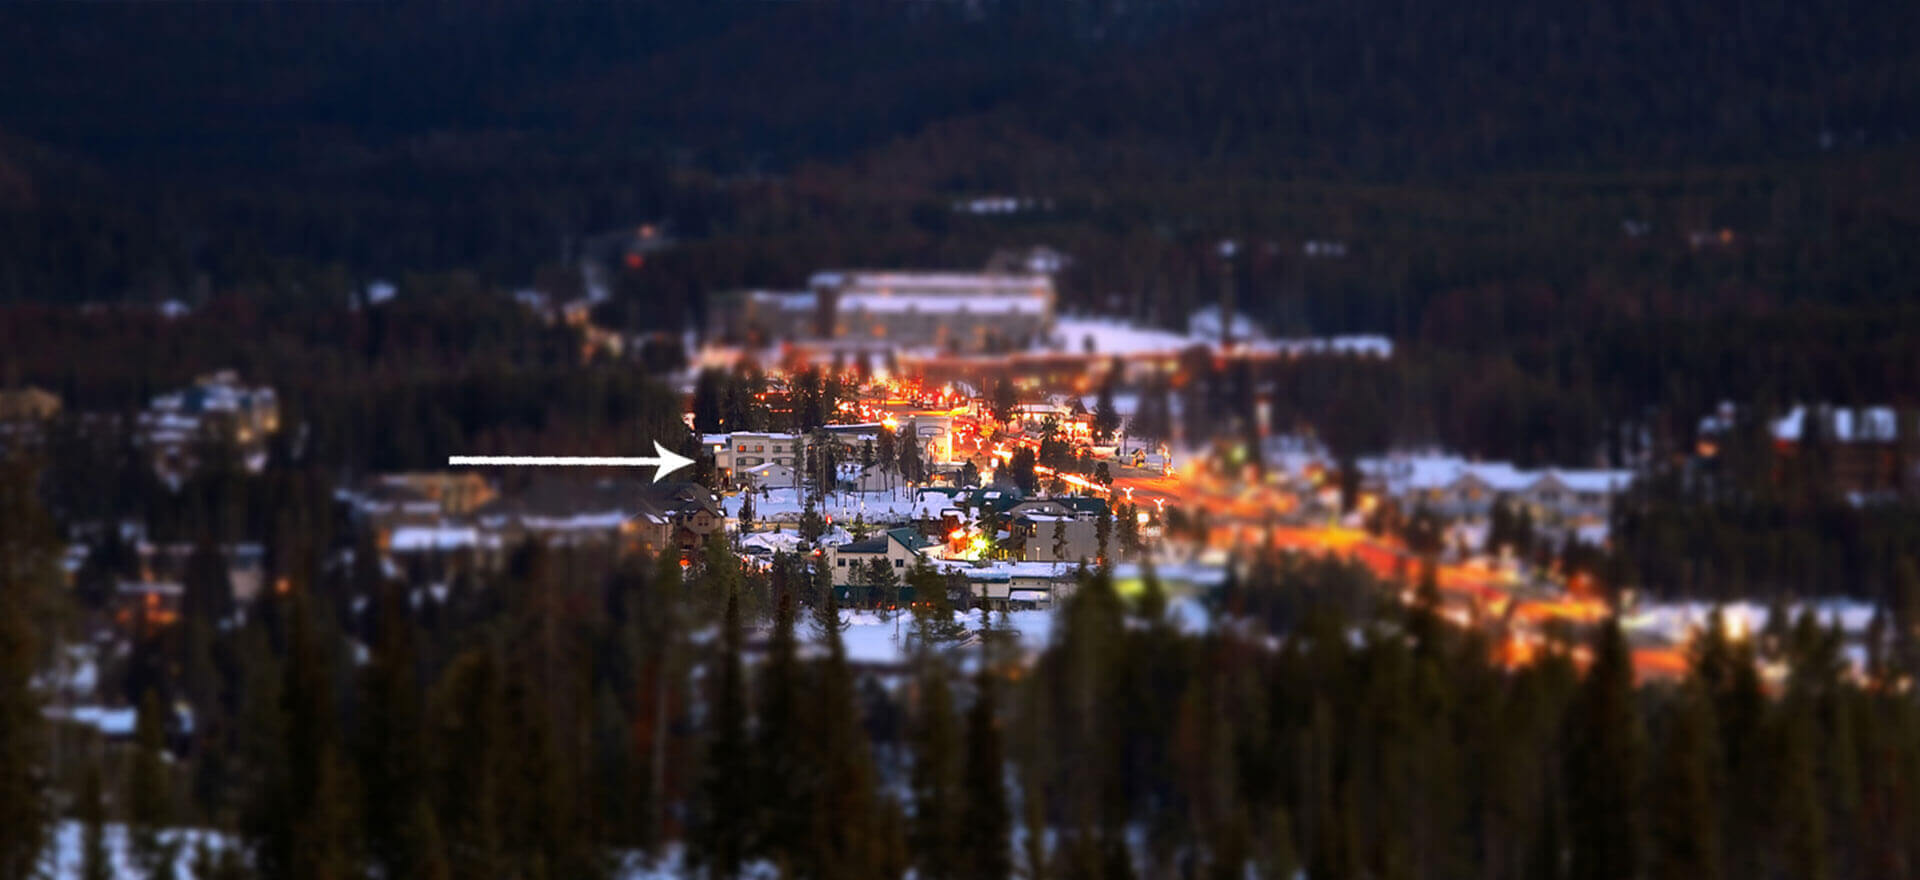 Best Western Alpenglo Lodge